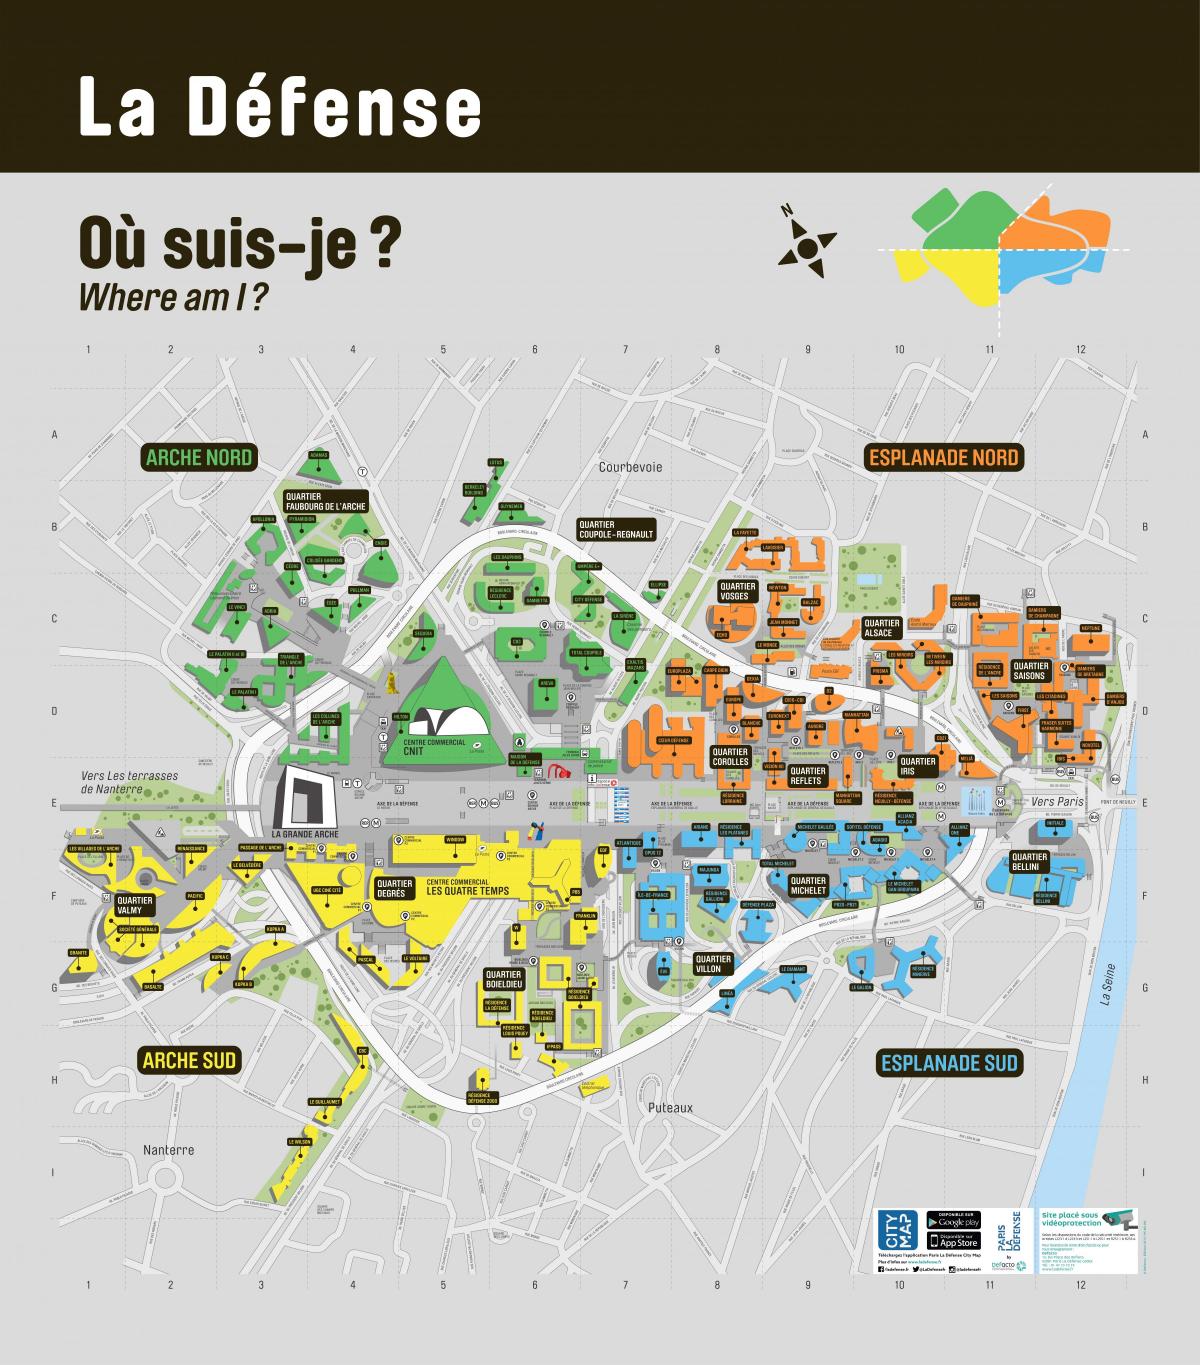 Քարտեզը Լա Դեֆանս